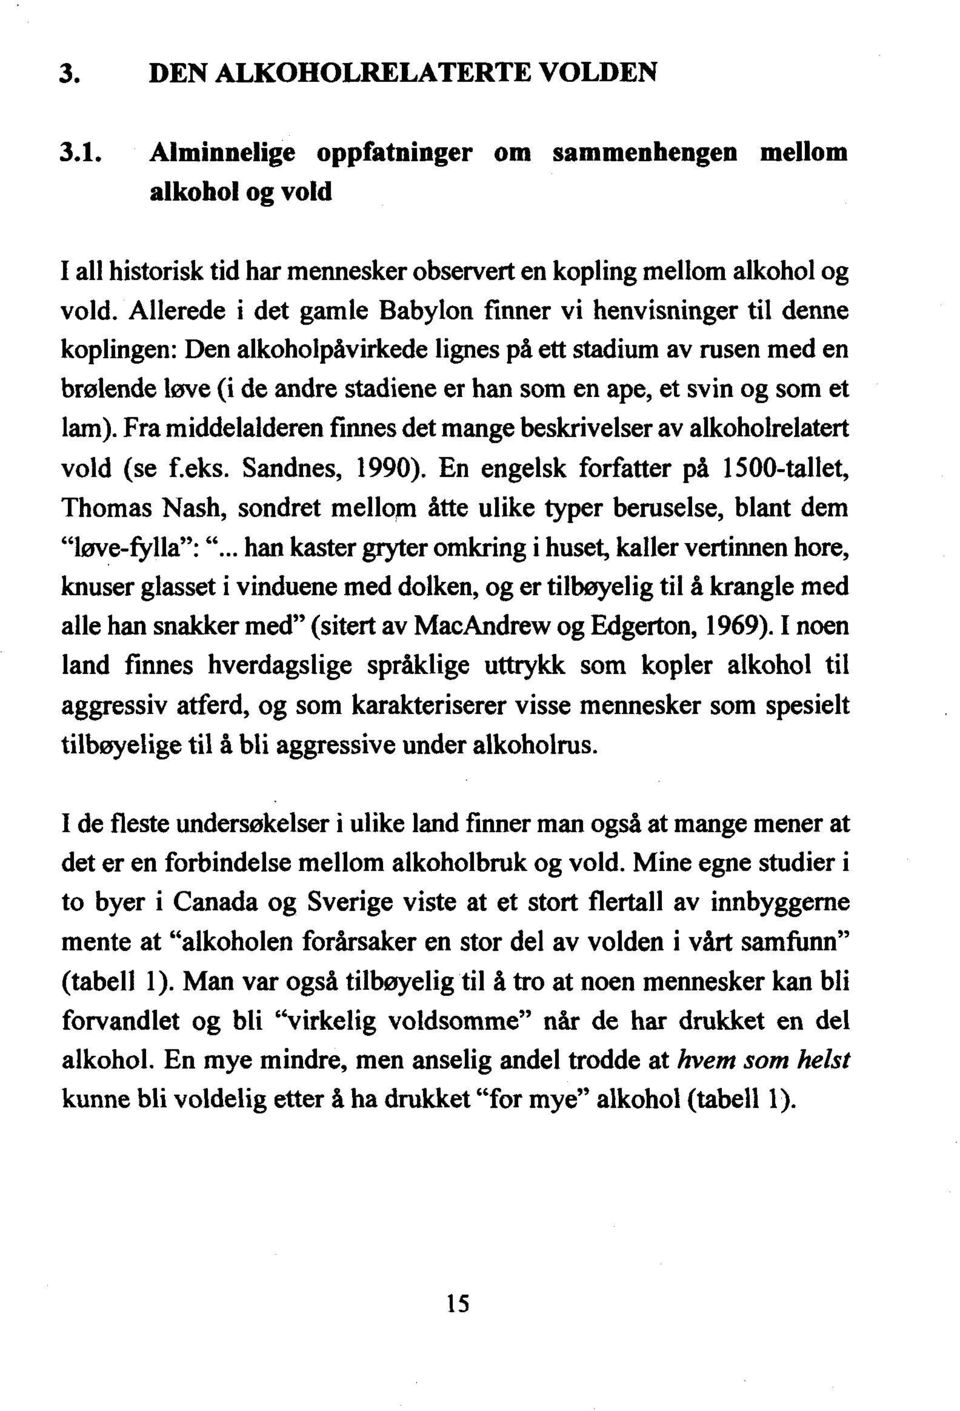 som et lam). Fra middelalderen finnes det mange beskrivelser av alkoholrelatert vold (se f.eks. Sandnes, 1990).